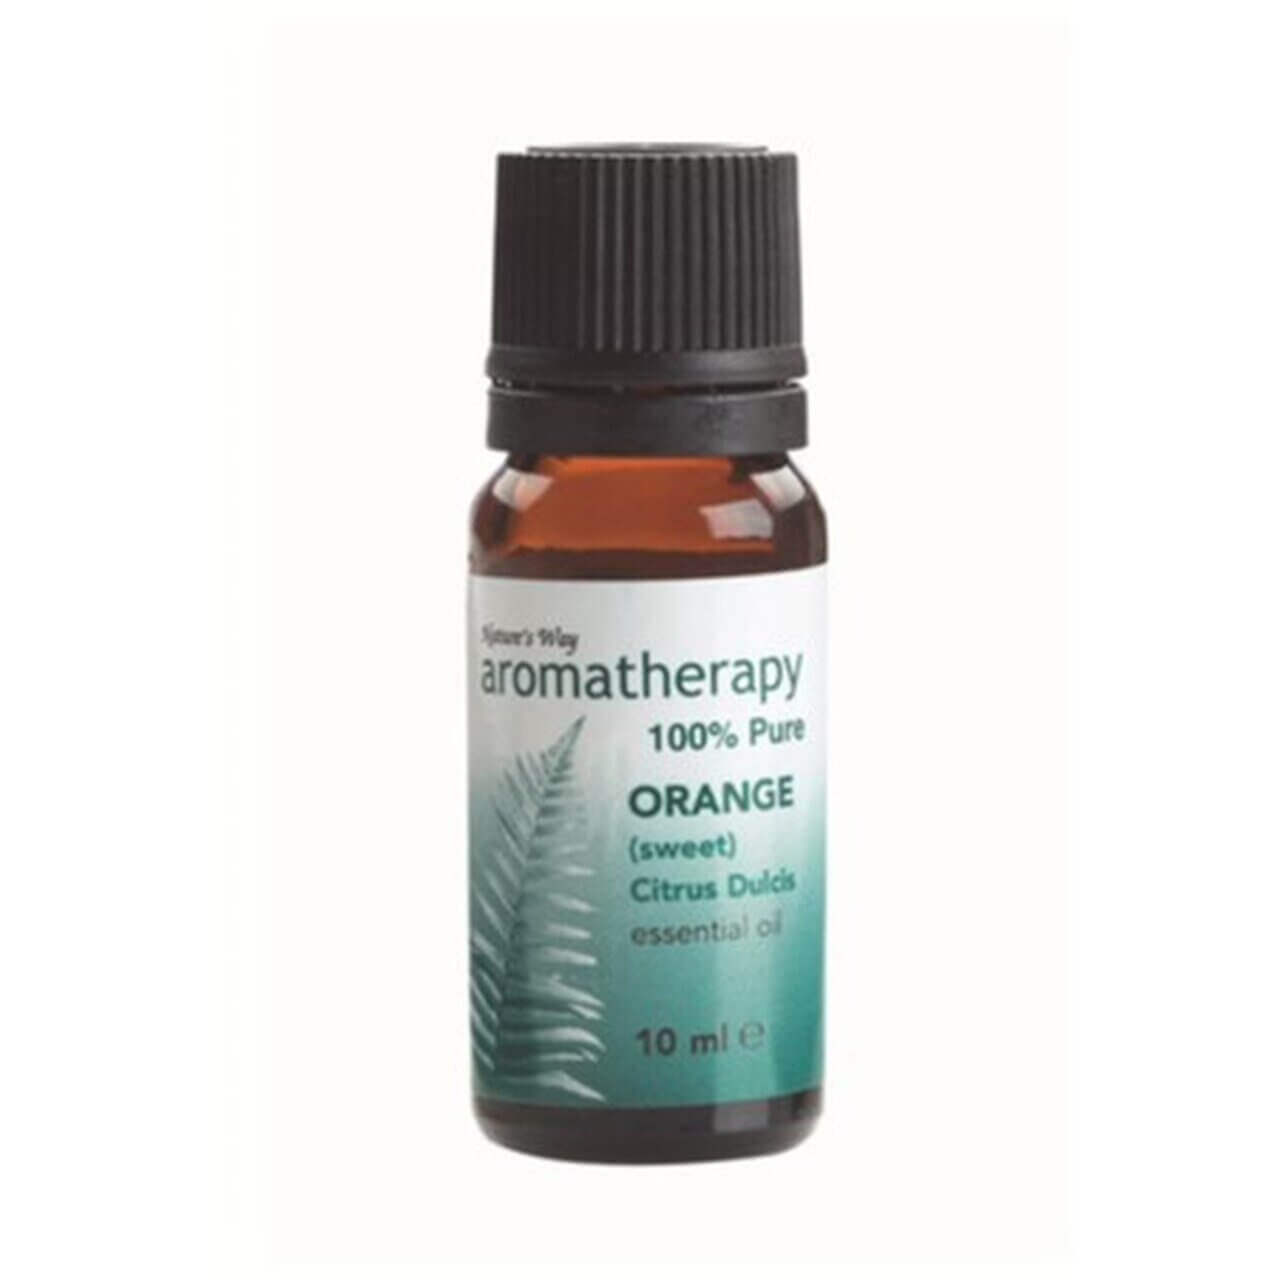 Aromatherapy Oil Natures Way Orange 10ml